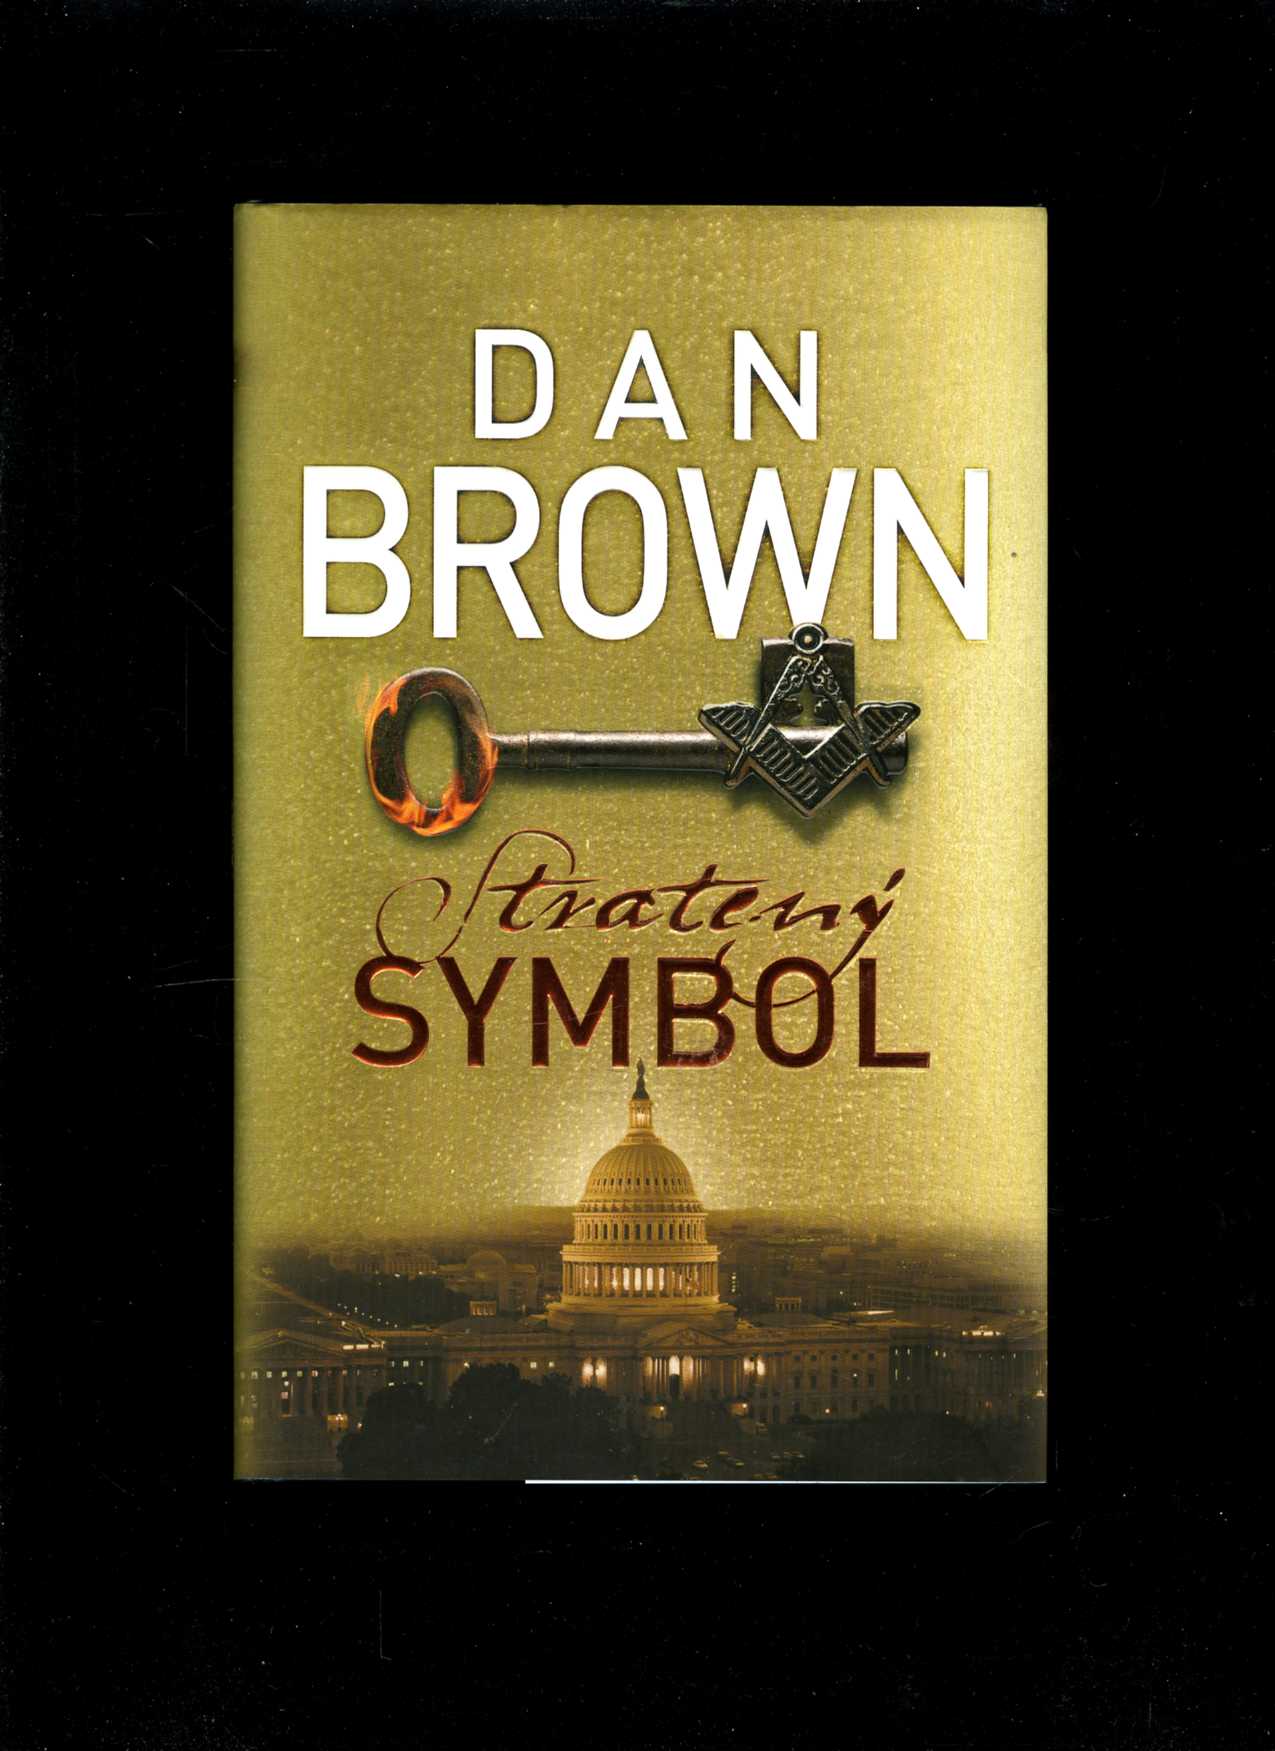 Stratený symbol (Dan Brown)